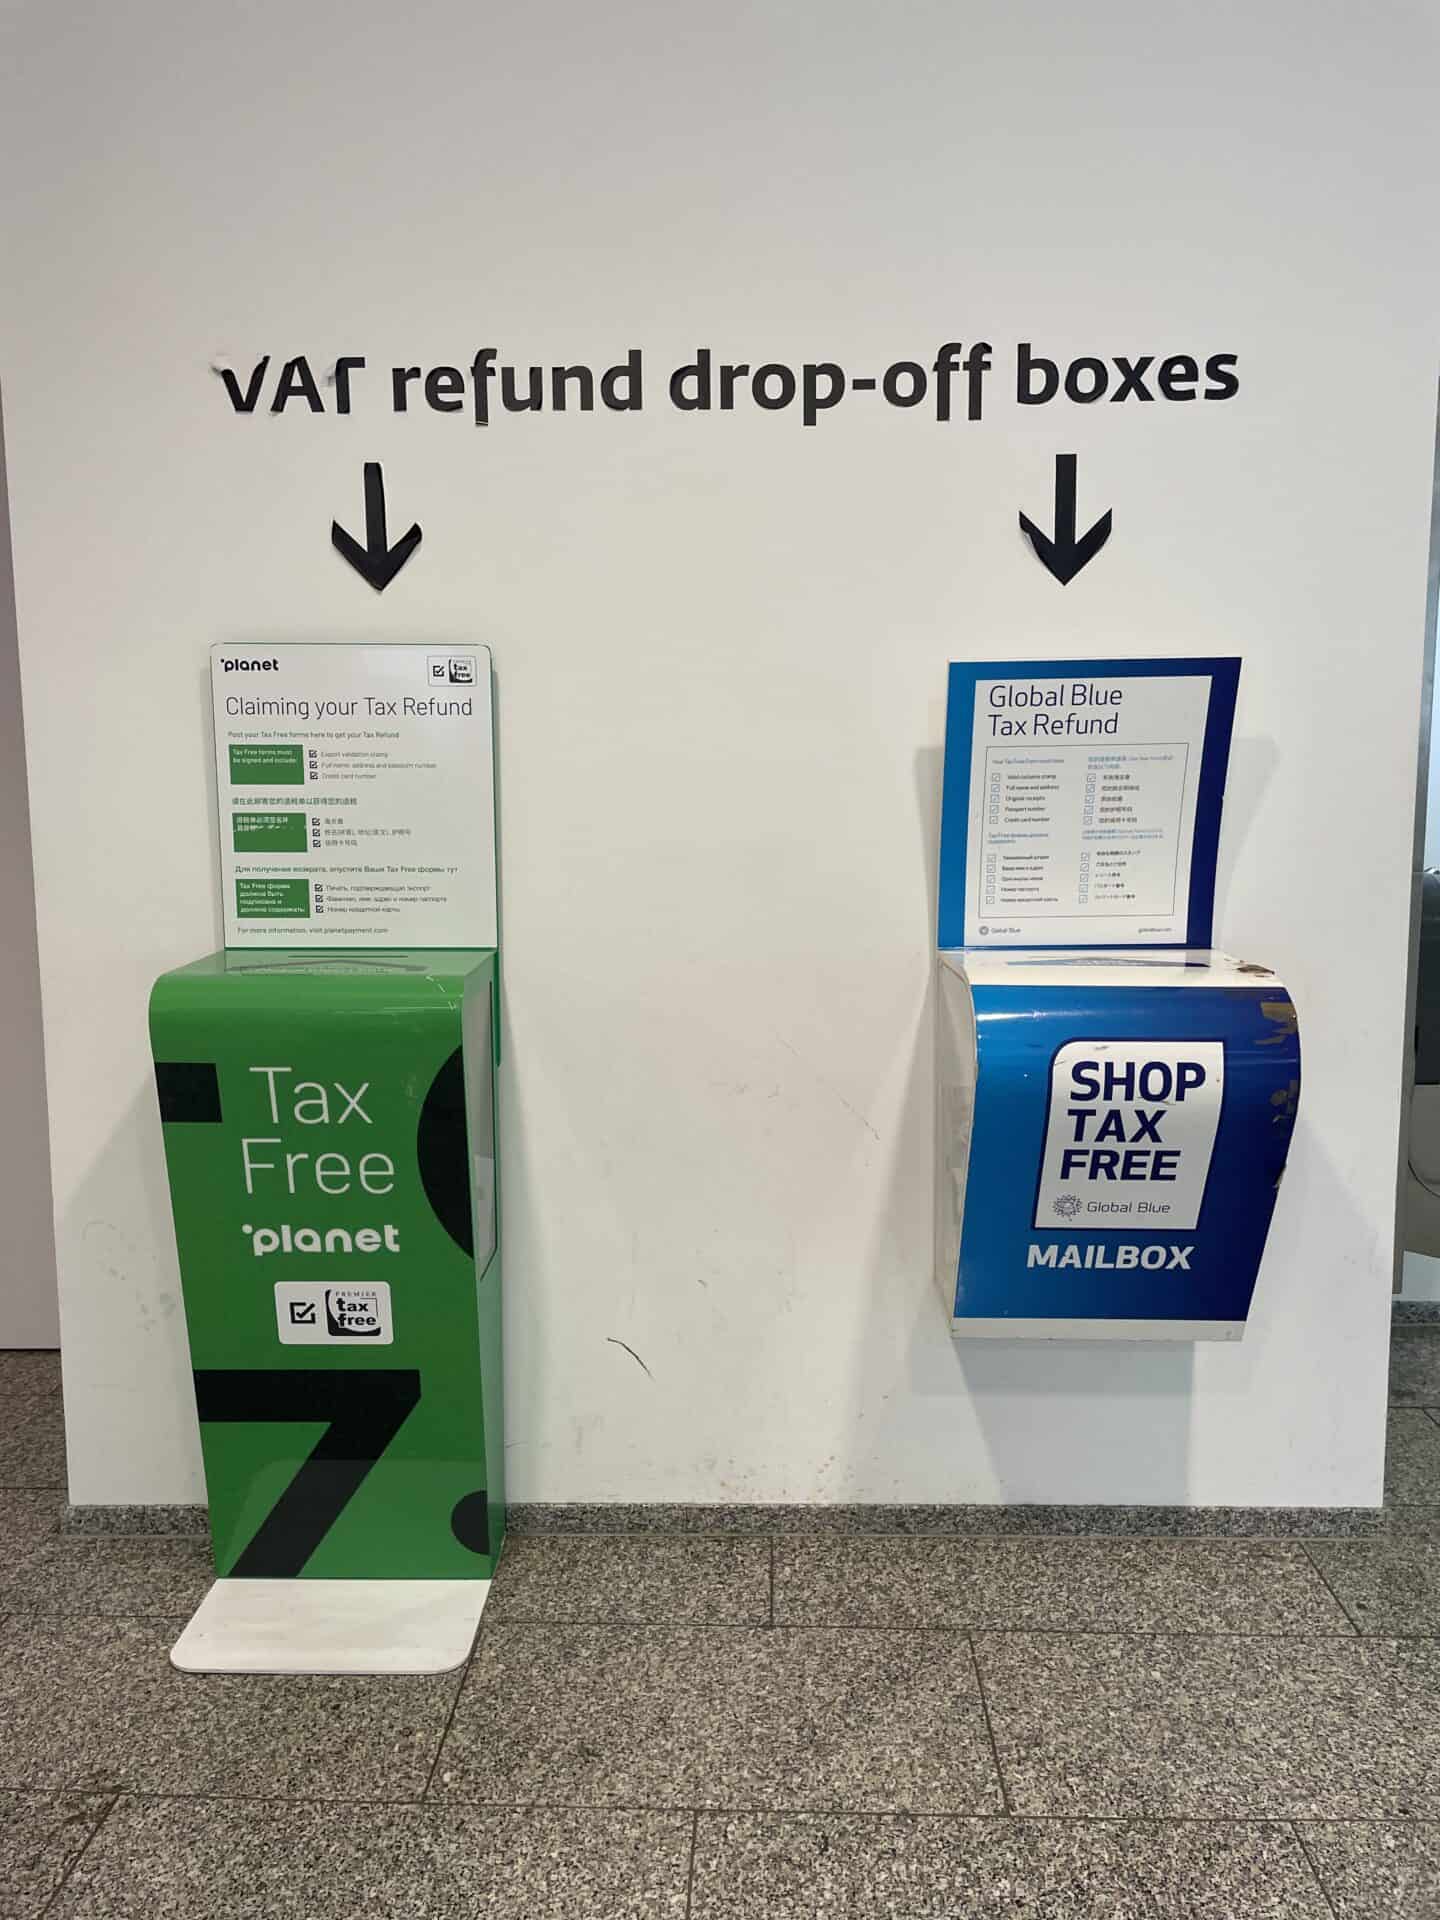 VAT TAX refund in Dubai and Paris